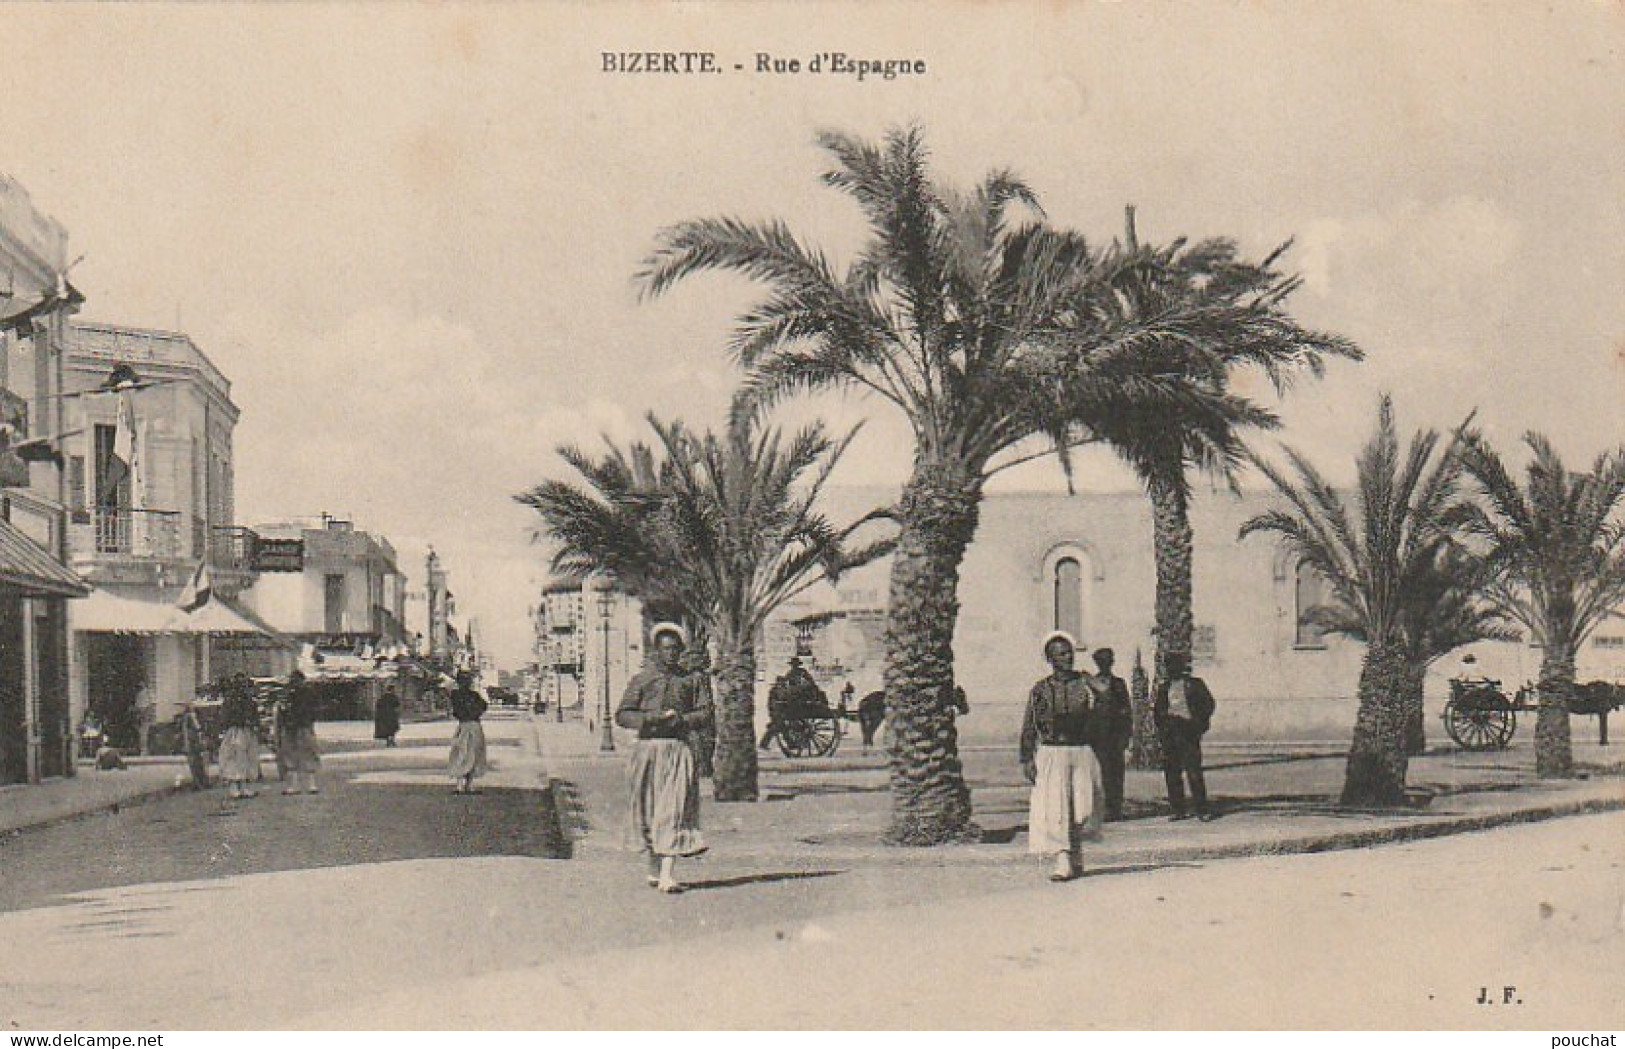 ZY 103- BIZERTE ( TUNISIE ) - RUE D' ESPAGNE - ANIMATION - 2 SCANS - Tunisia